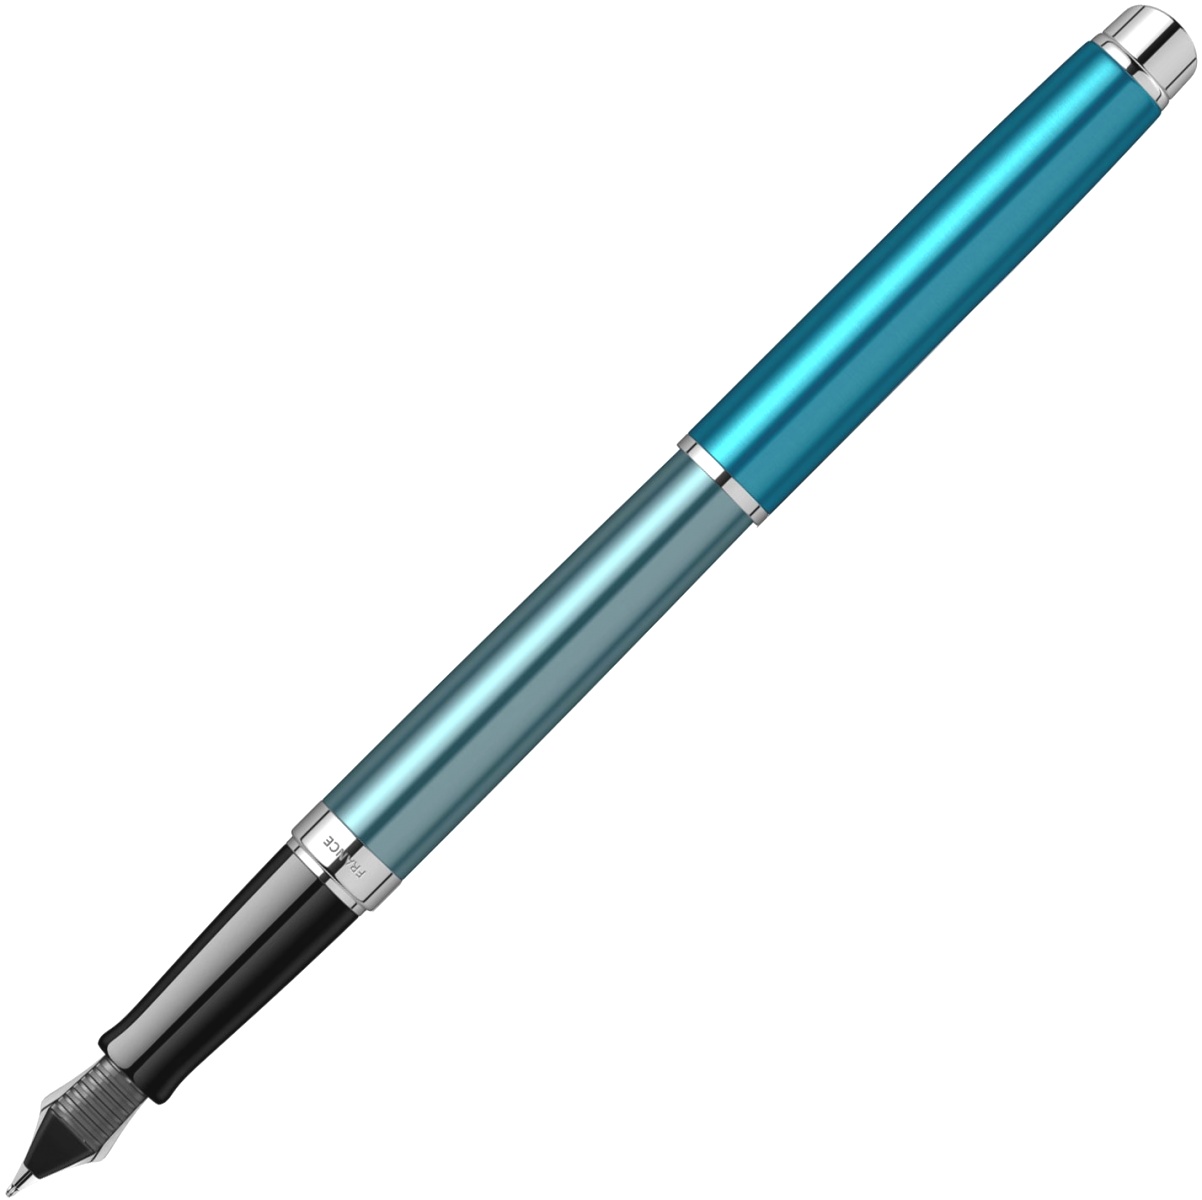  Ручка перьевая Waterman Hemisphere Deluxe 2020, Sea Blue CT (Перо F), фото 3